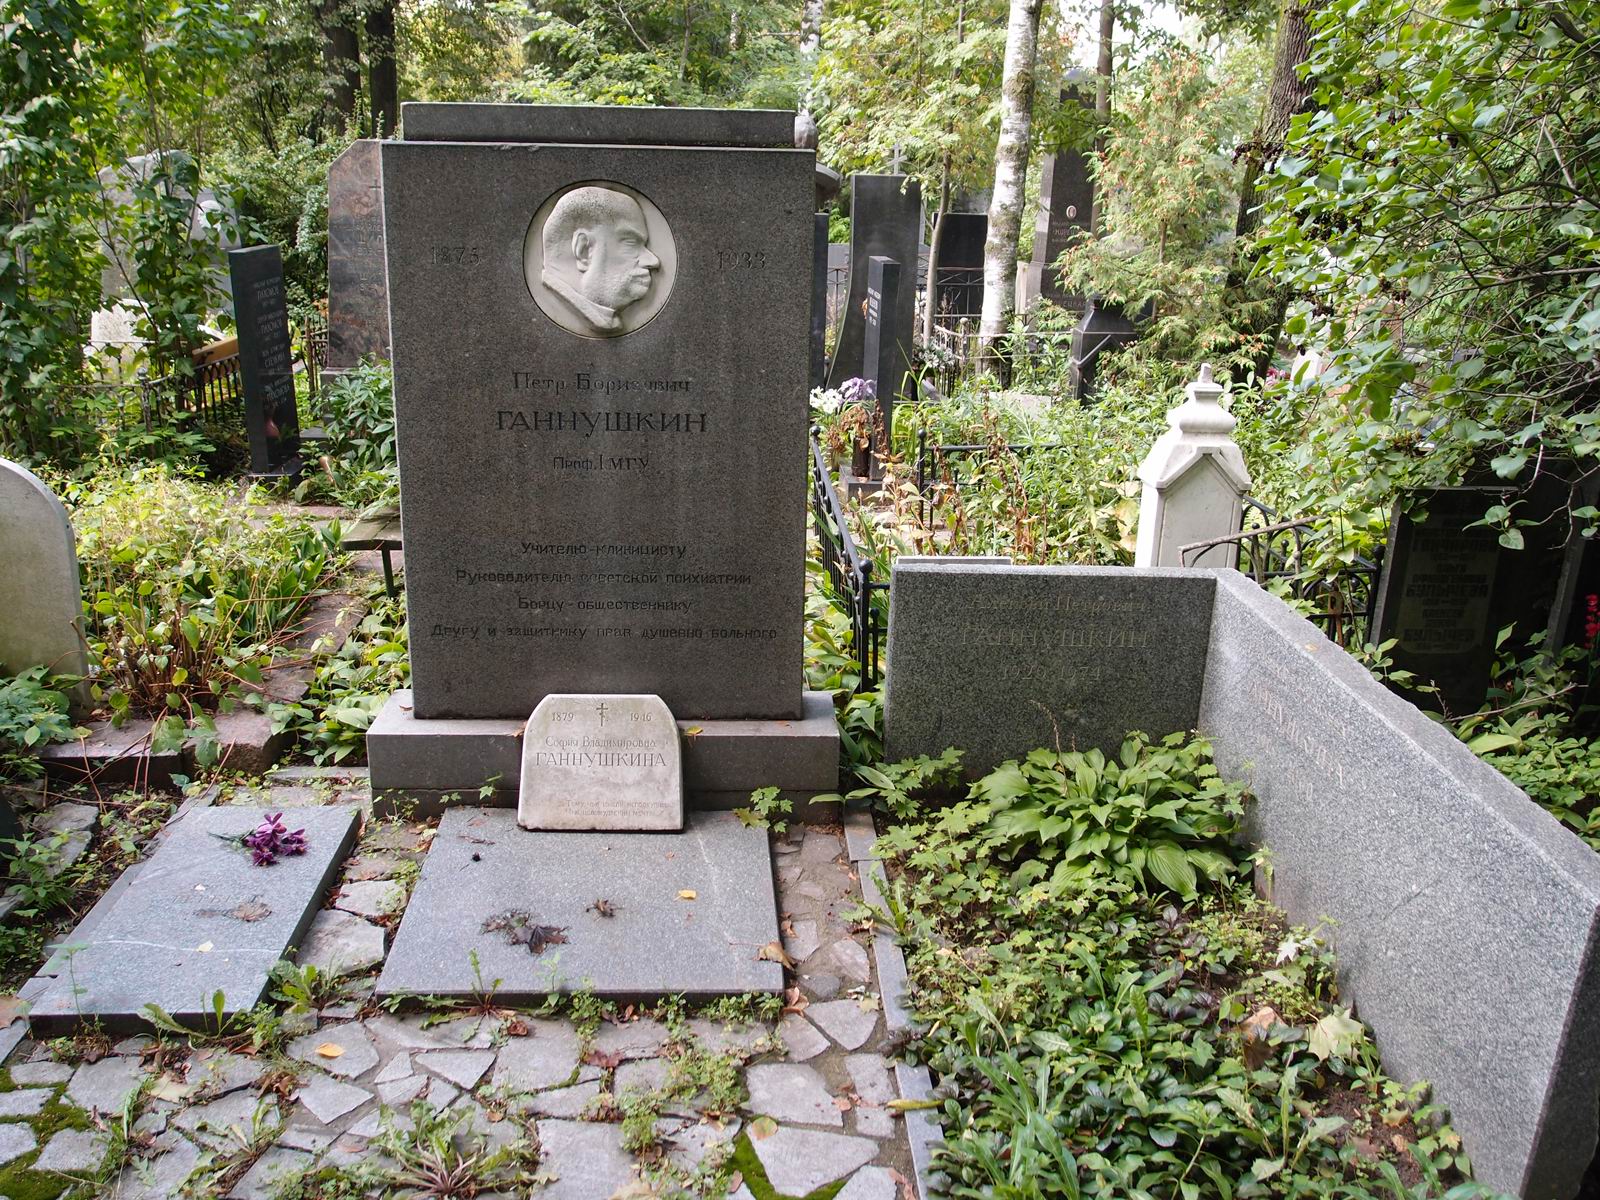 Памятник на могиле Ганнушкина П.Б. (1875–1933), ск. О.Домогацкая, на Новодевичьем кладбище (3–43–11). Нажмите левую кнопку мыши чтобы увидеть фрагмент памятника.